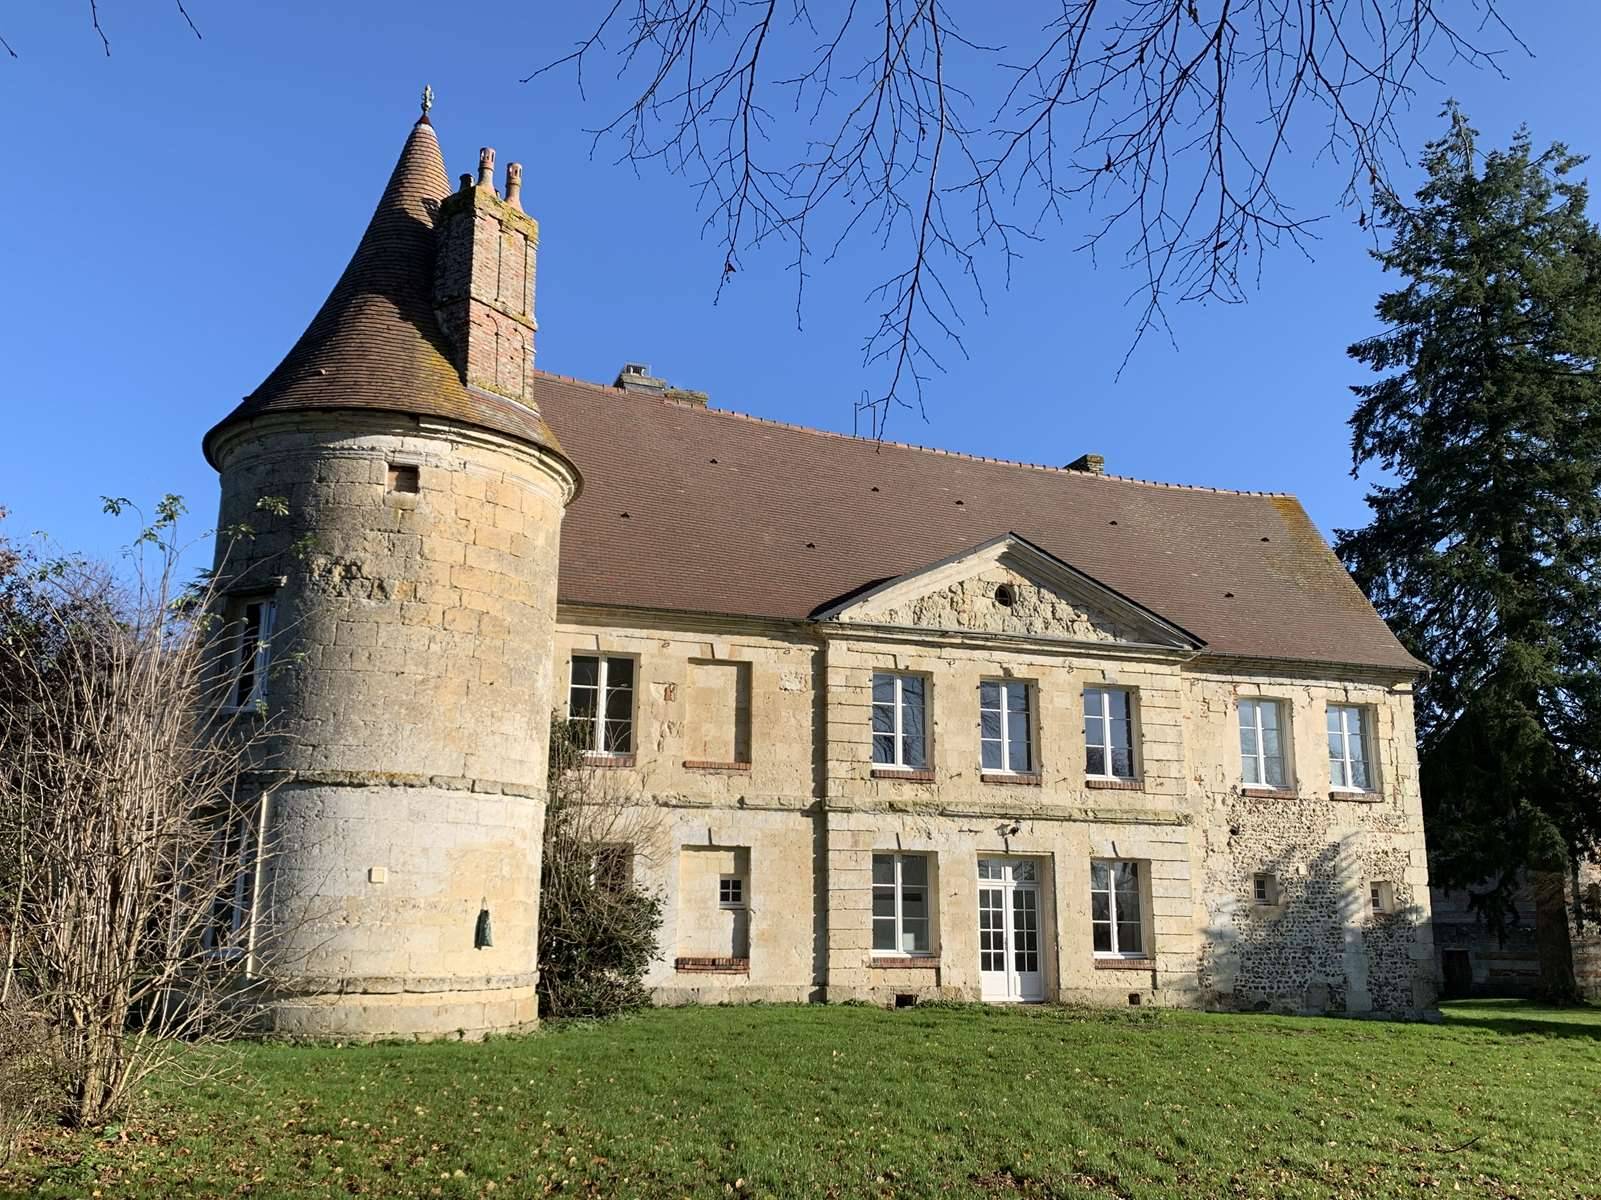  A vendre Château en pierres des XVème et XVIIIème siècles avec parc de 1Ha 28a, entre LISIEUX 14100 et ORBEC 14290